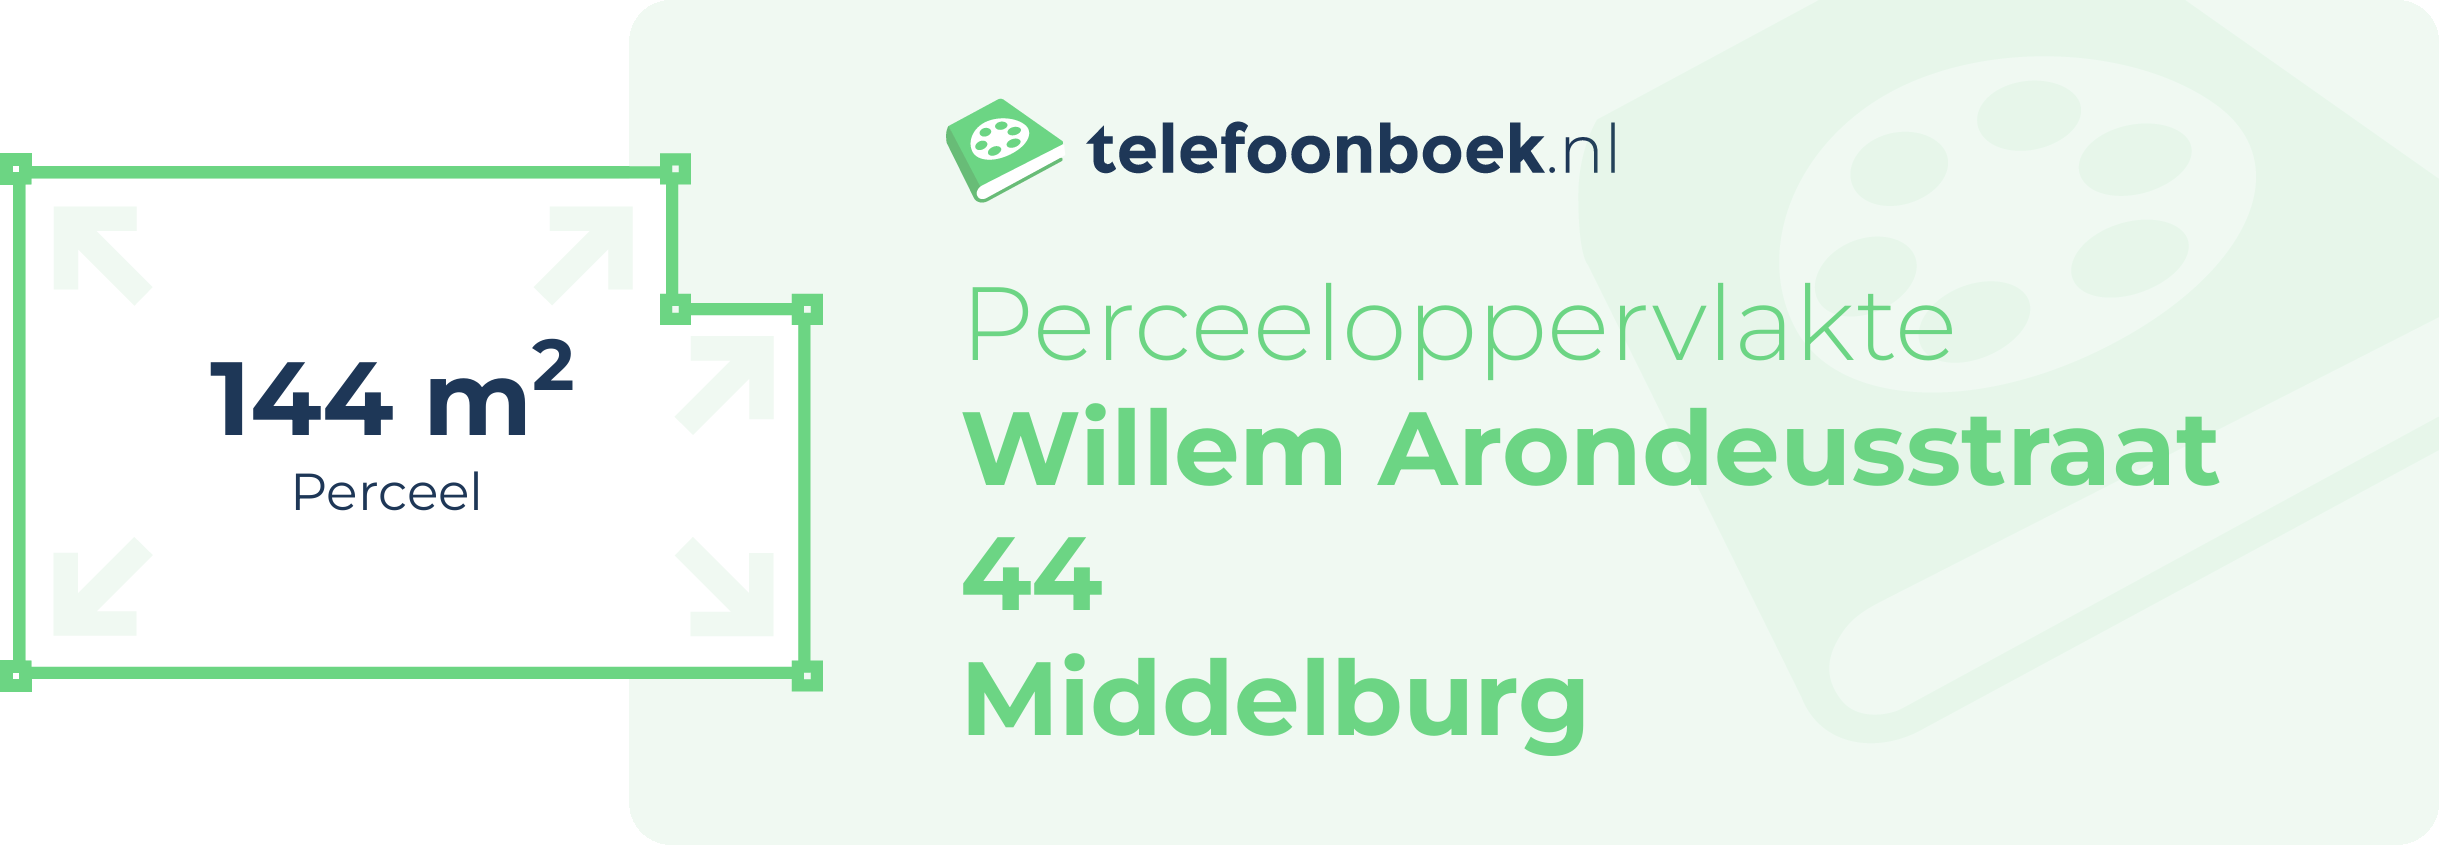 Perceeloppervlakte Willem Arondeusstraat 44 Middelburg